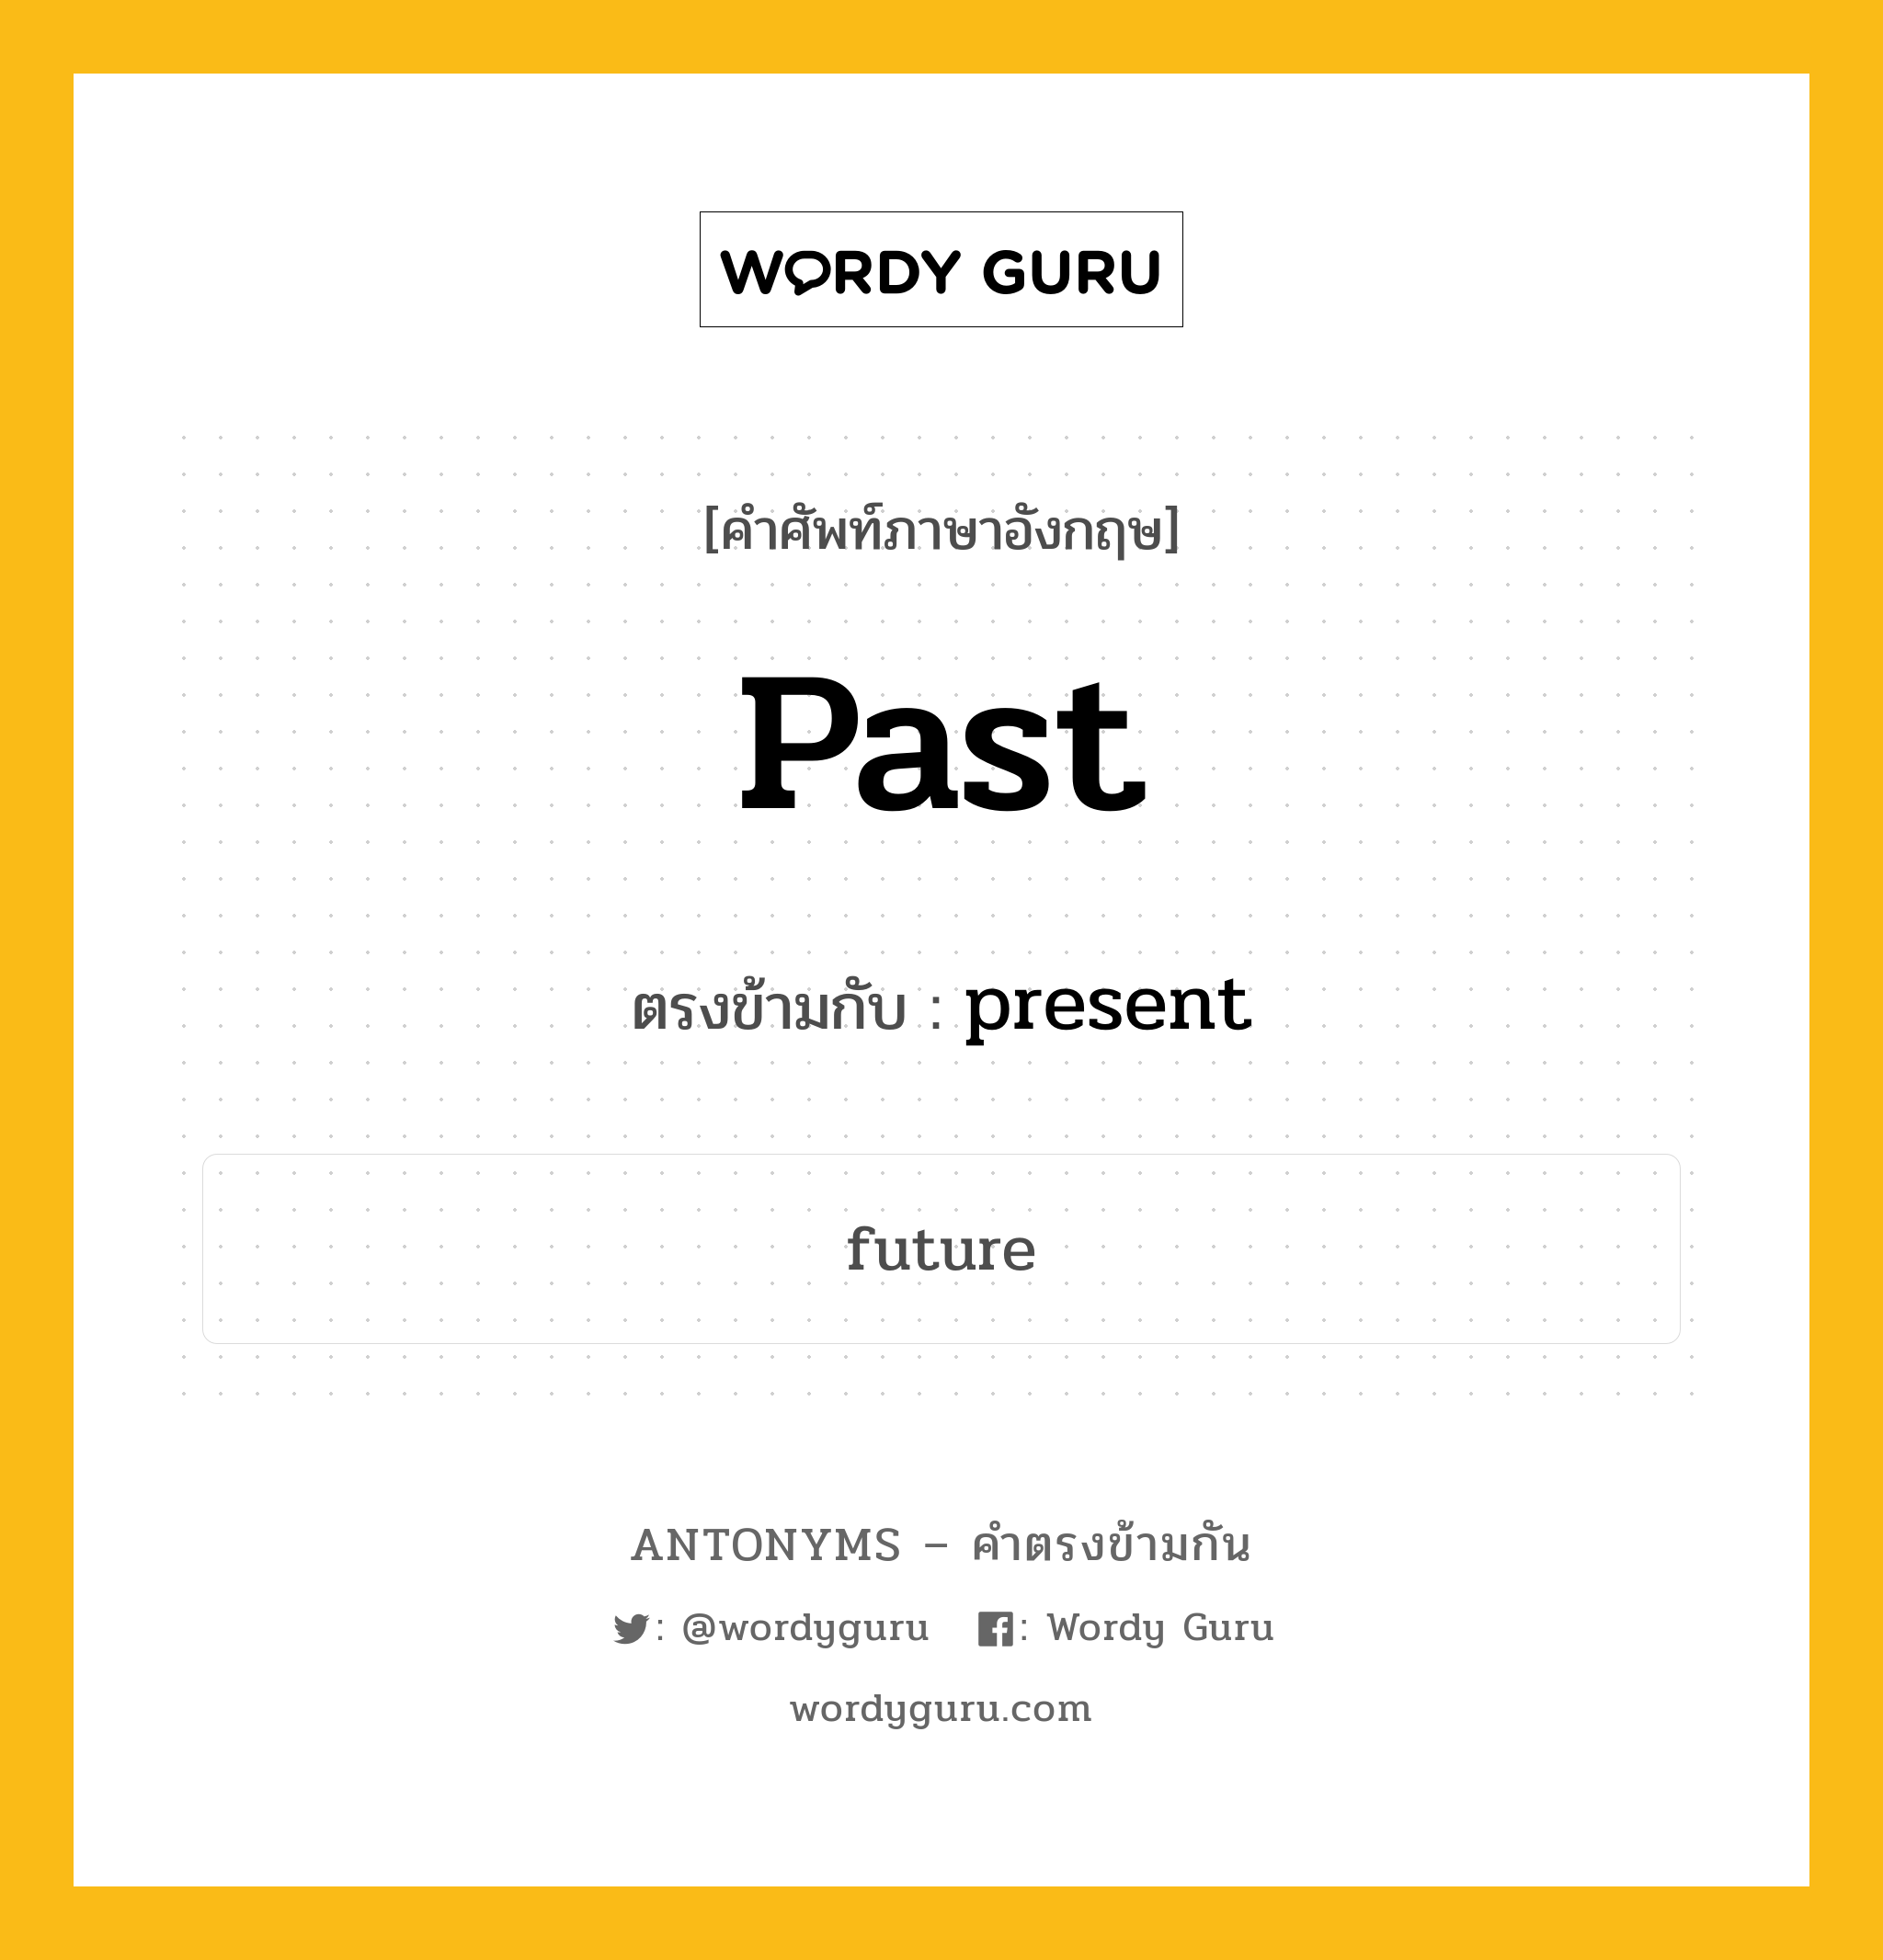 past เป็นคำตรงข้ามกับคำไหนบ้าง?, คำศัพท์ภาษาอังกฤษ past ตรงข้ามกับ present หมวด present